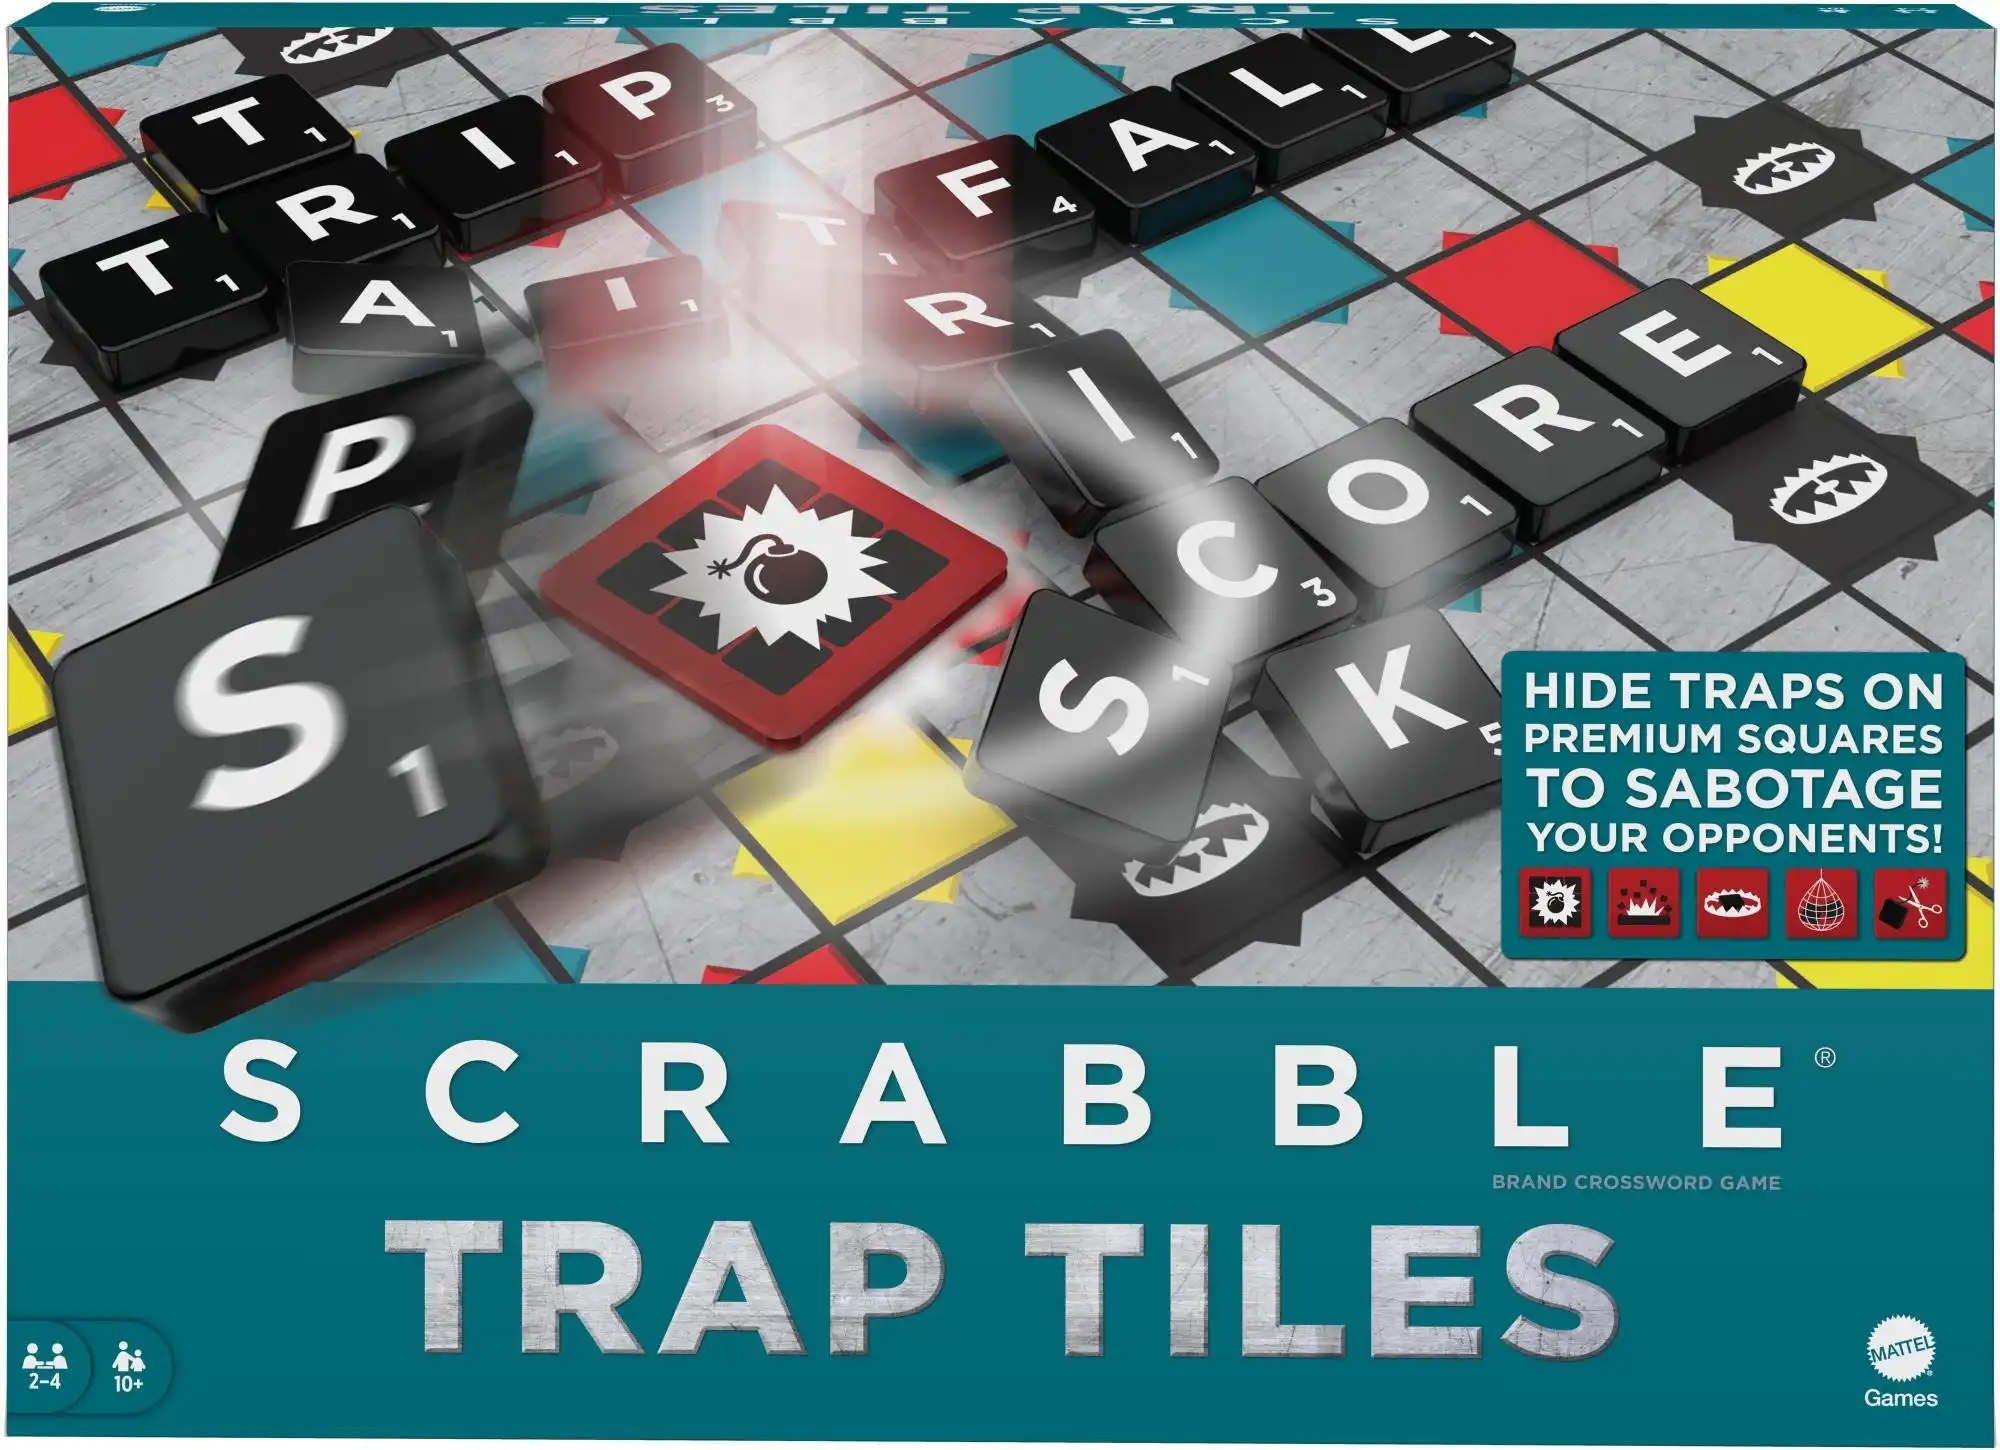 Scrabble Trap Tiles